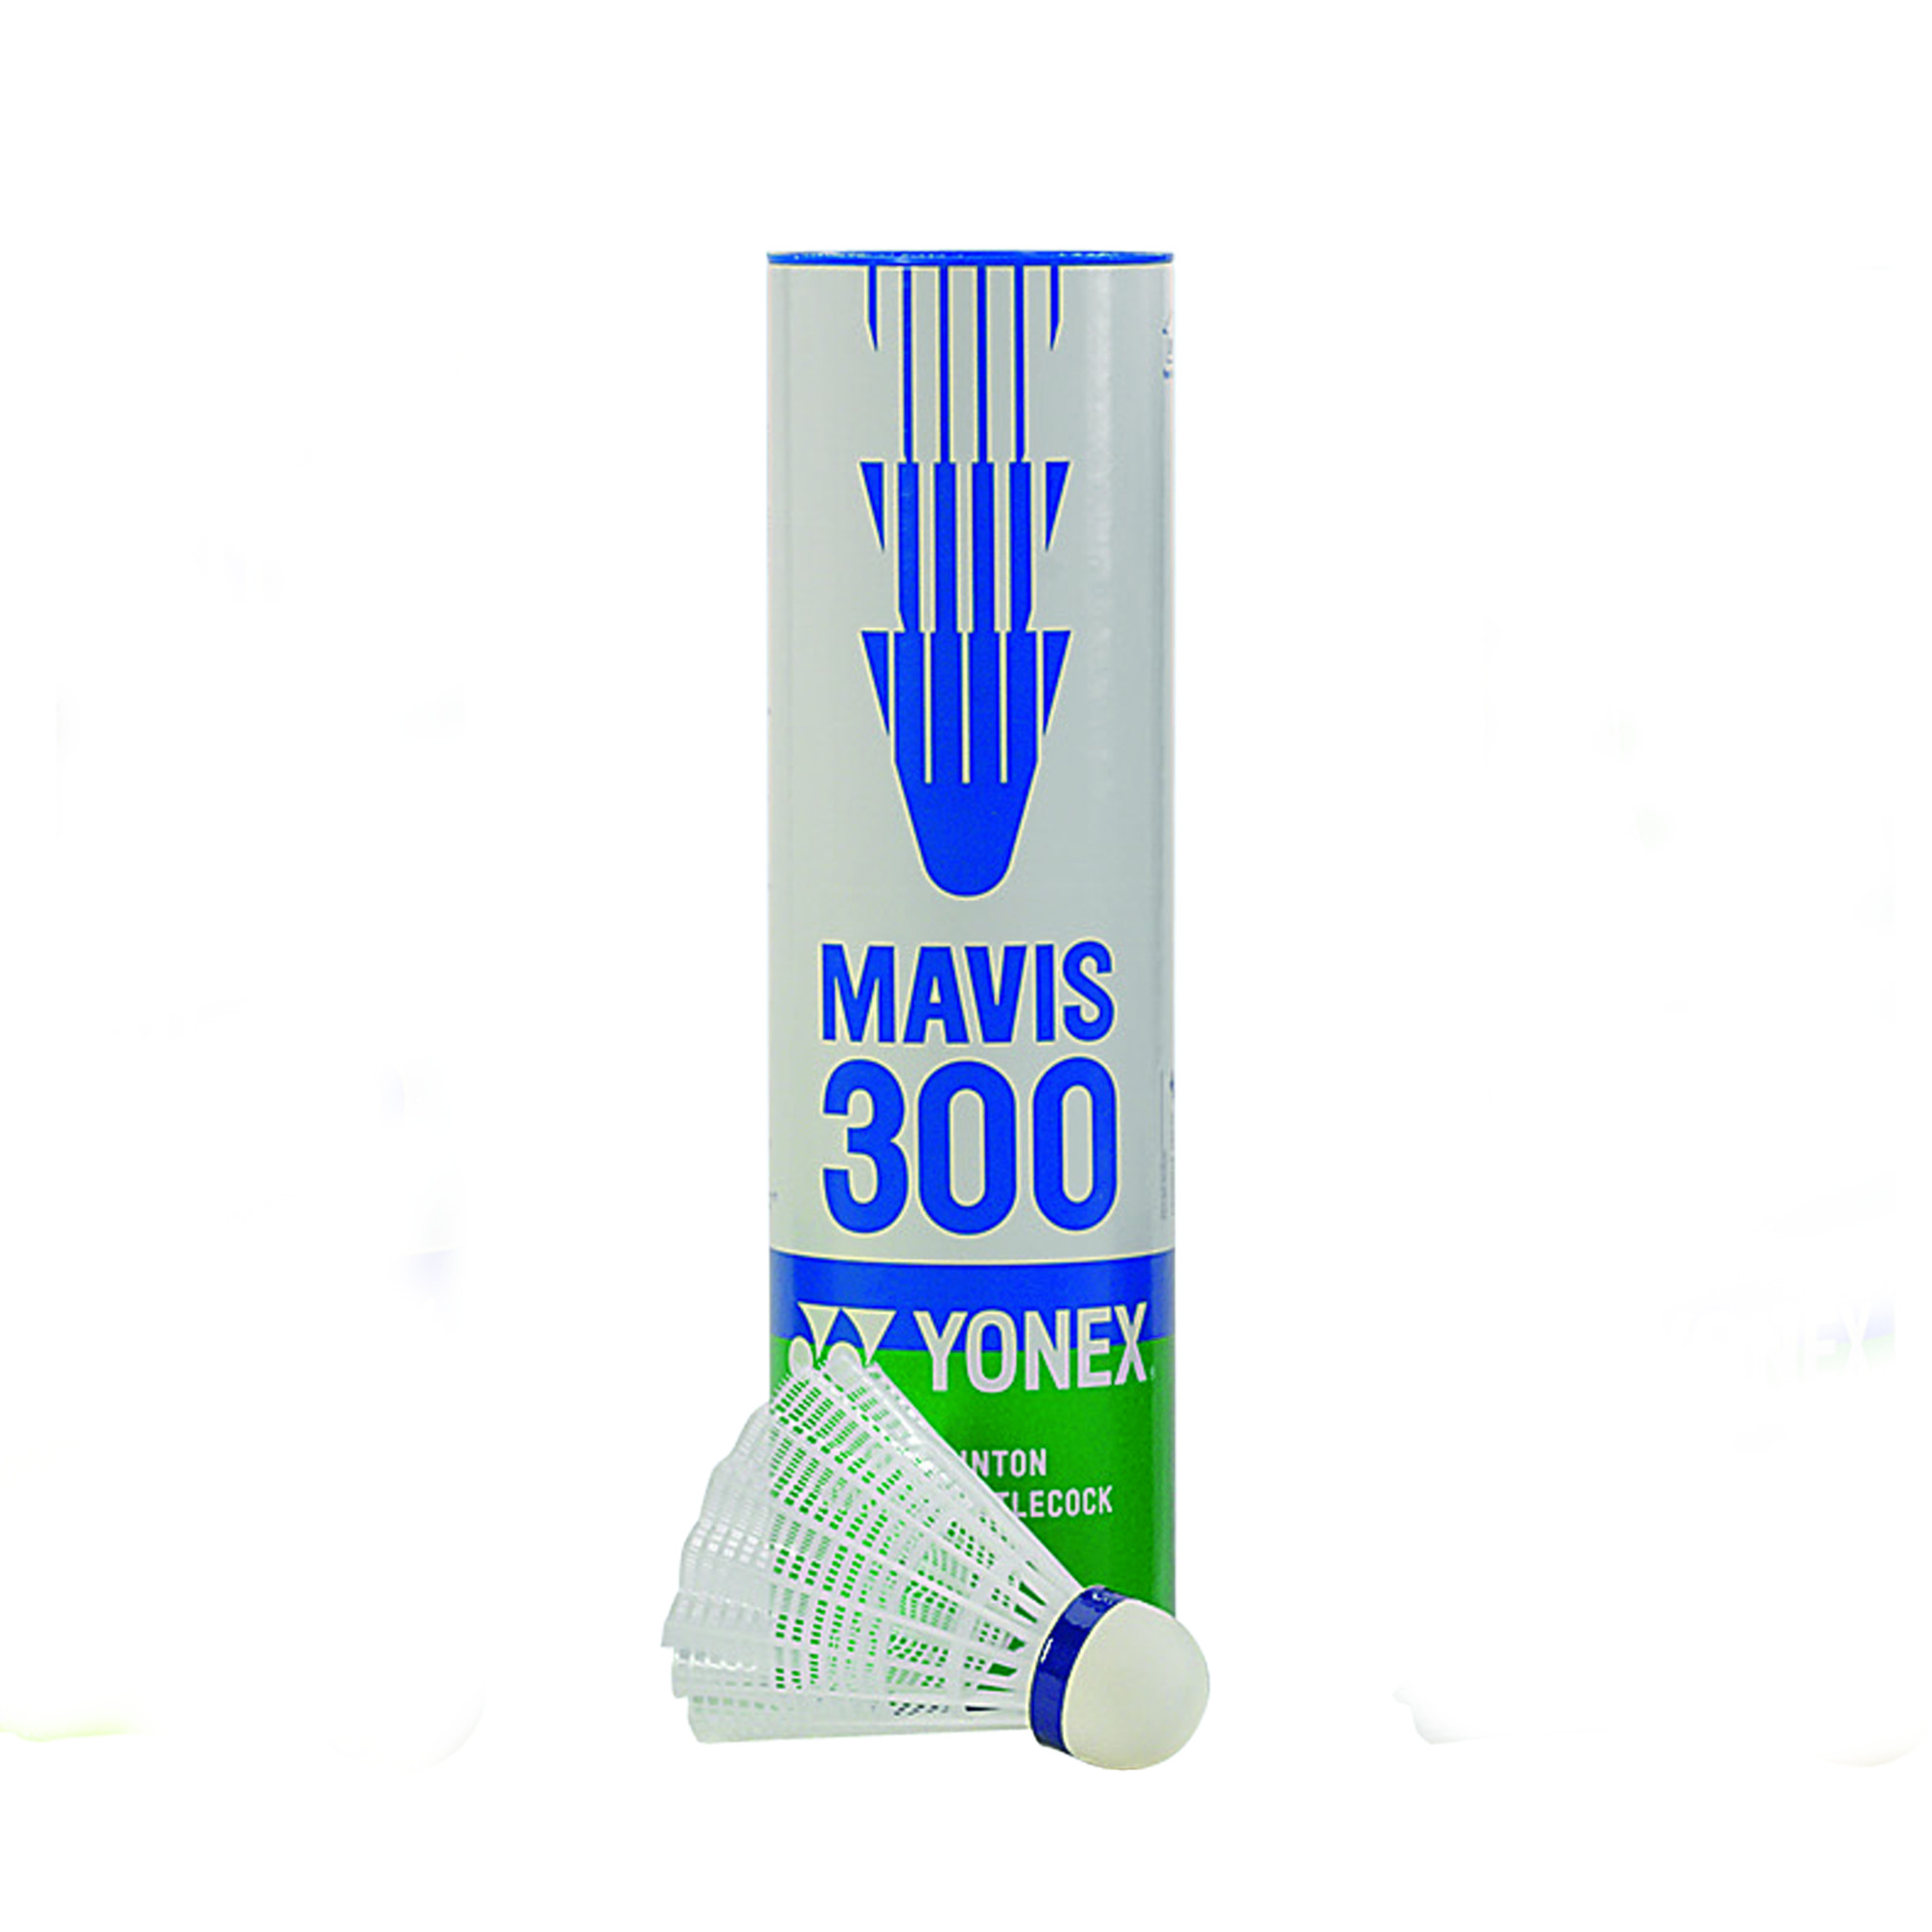 Yonex Mavis 300, Badminton-Bälle, weiß